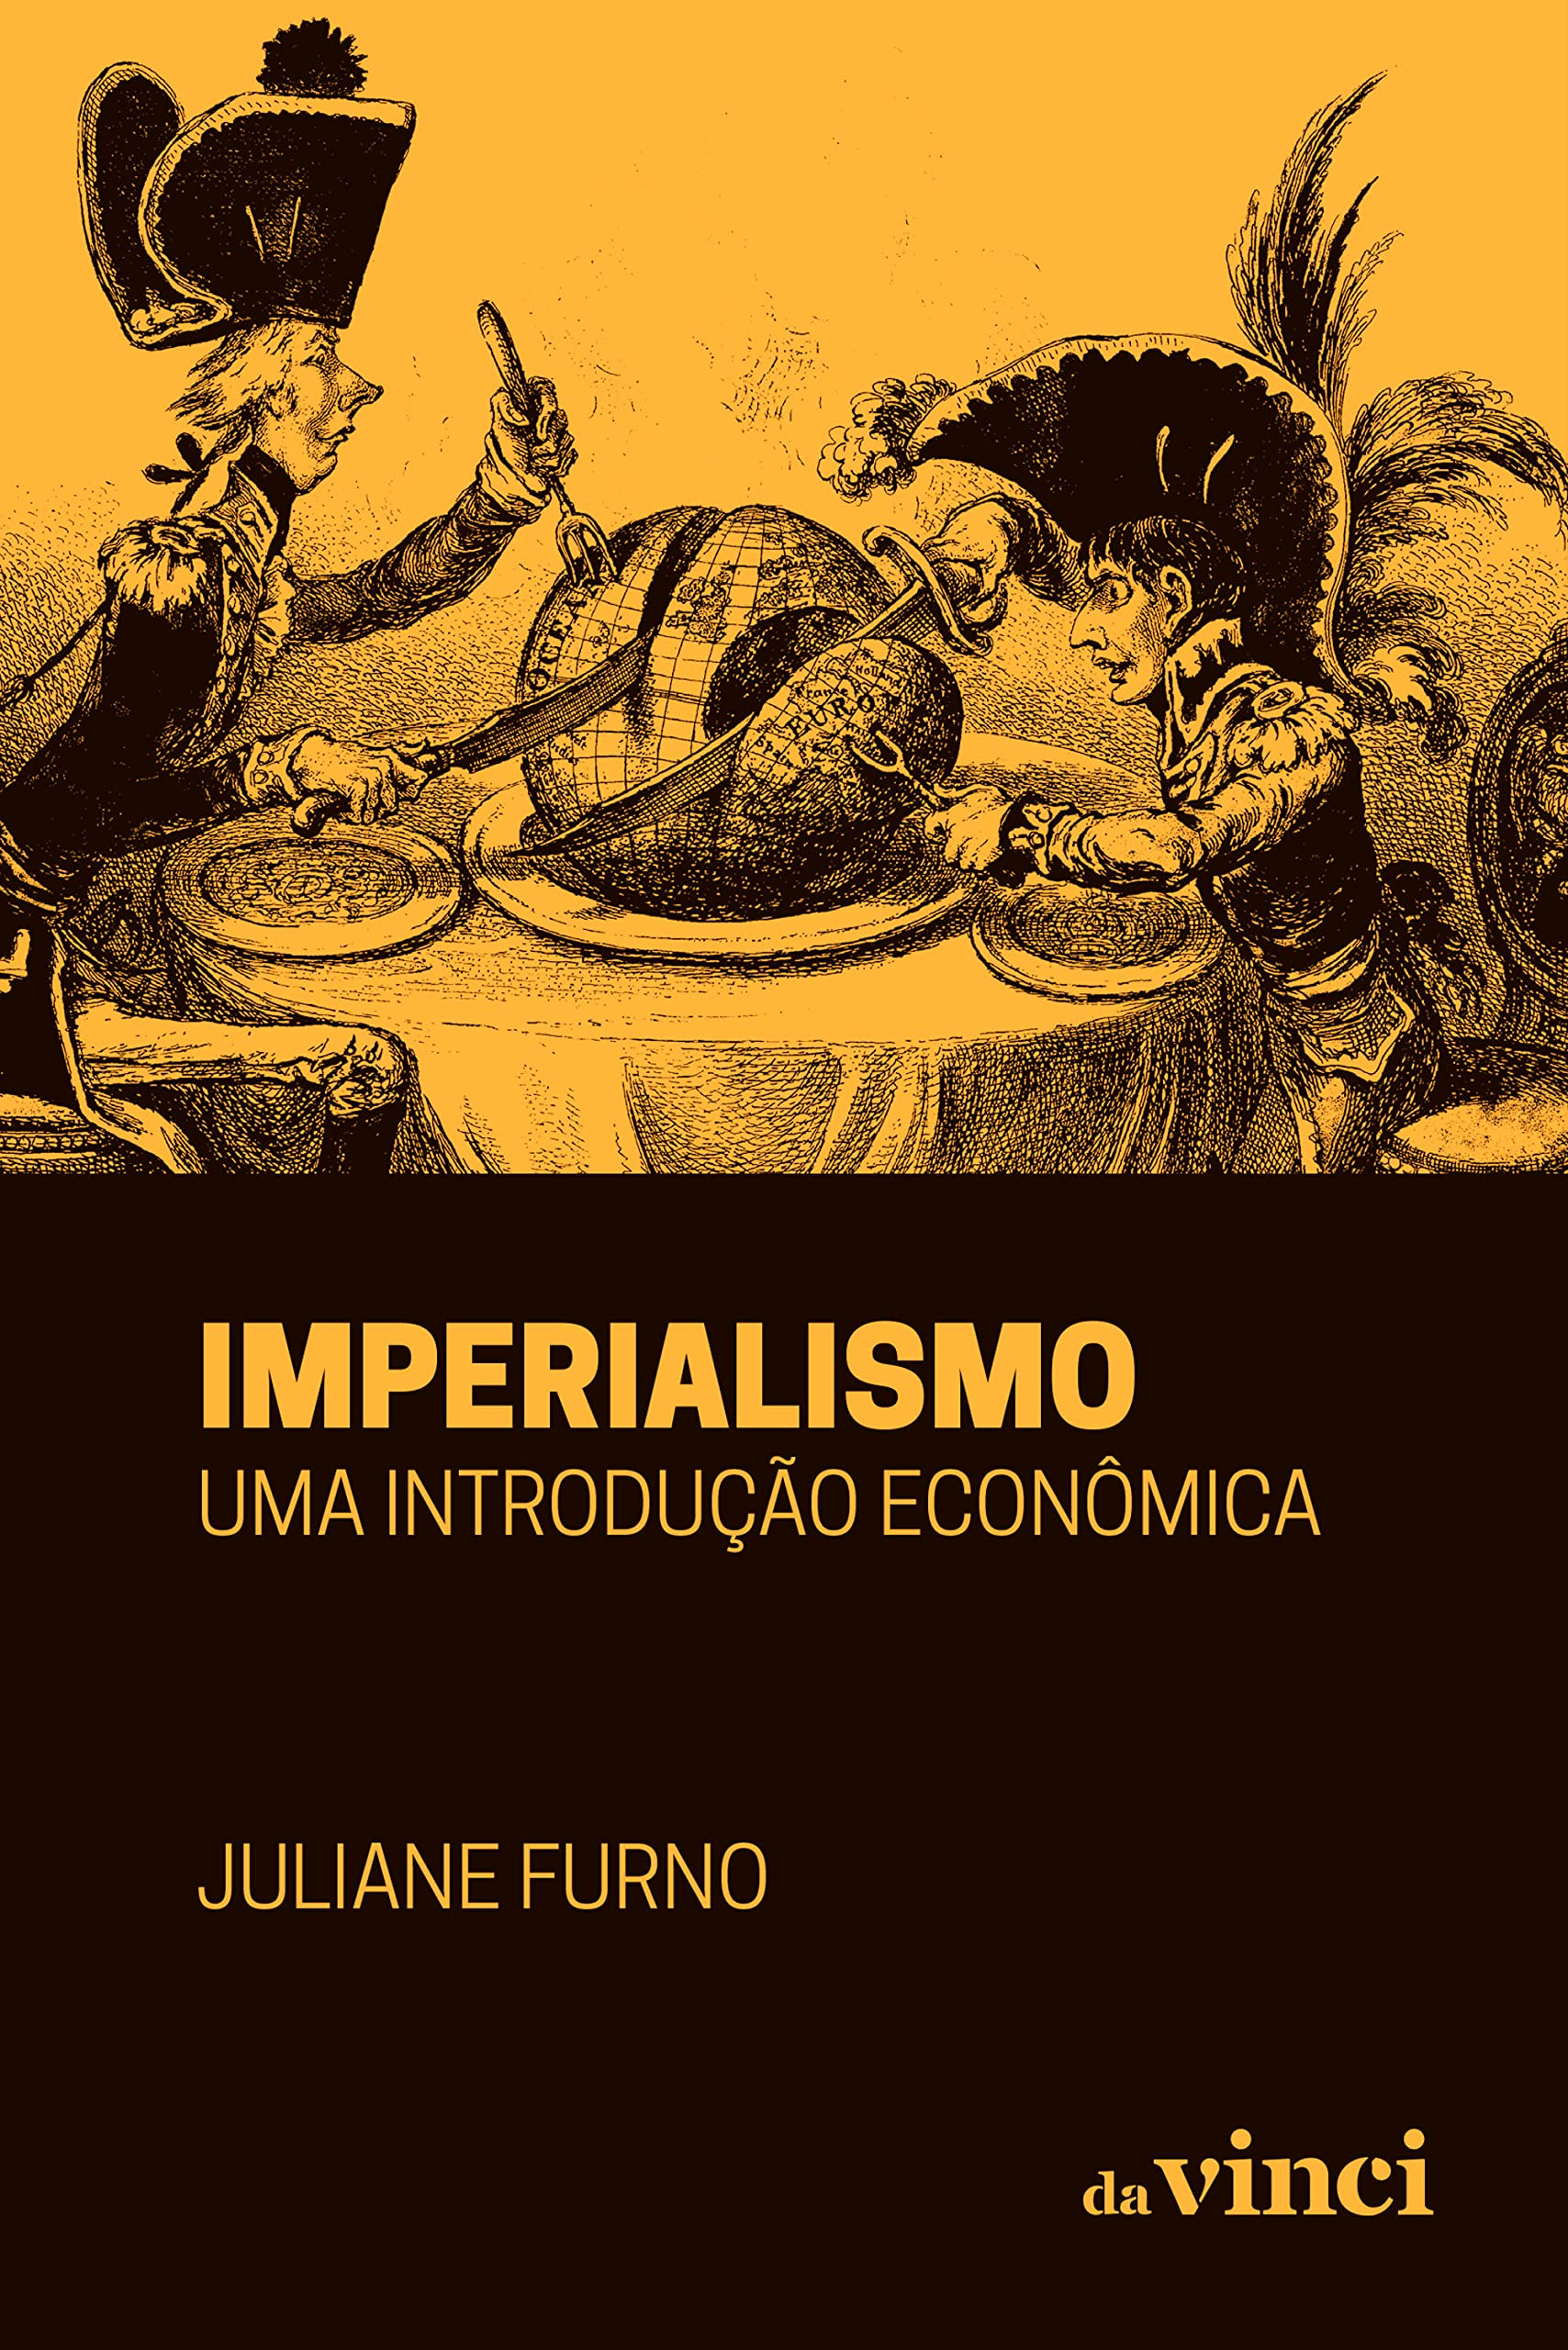 Imperialismo: uma introdução econômica (Portuguese Edition)